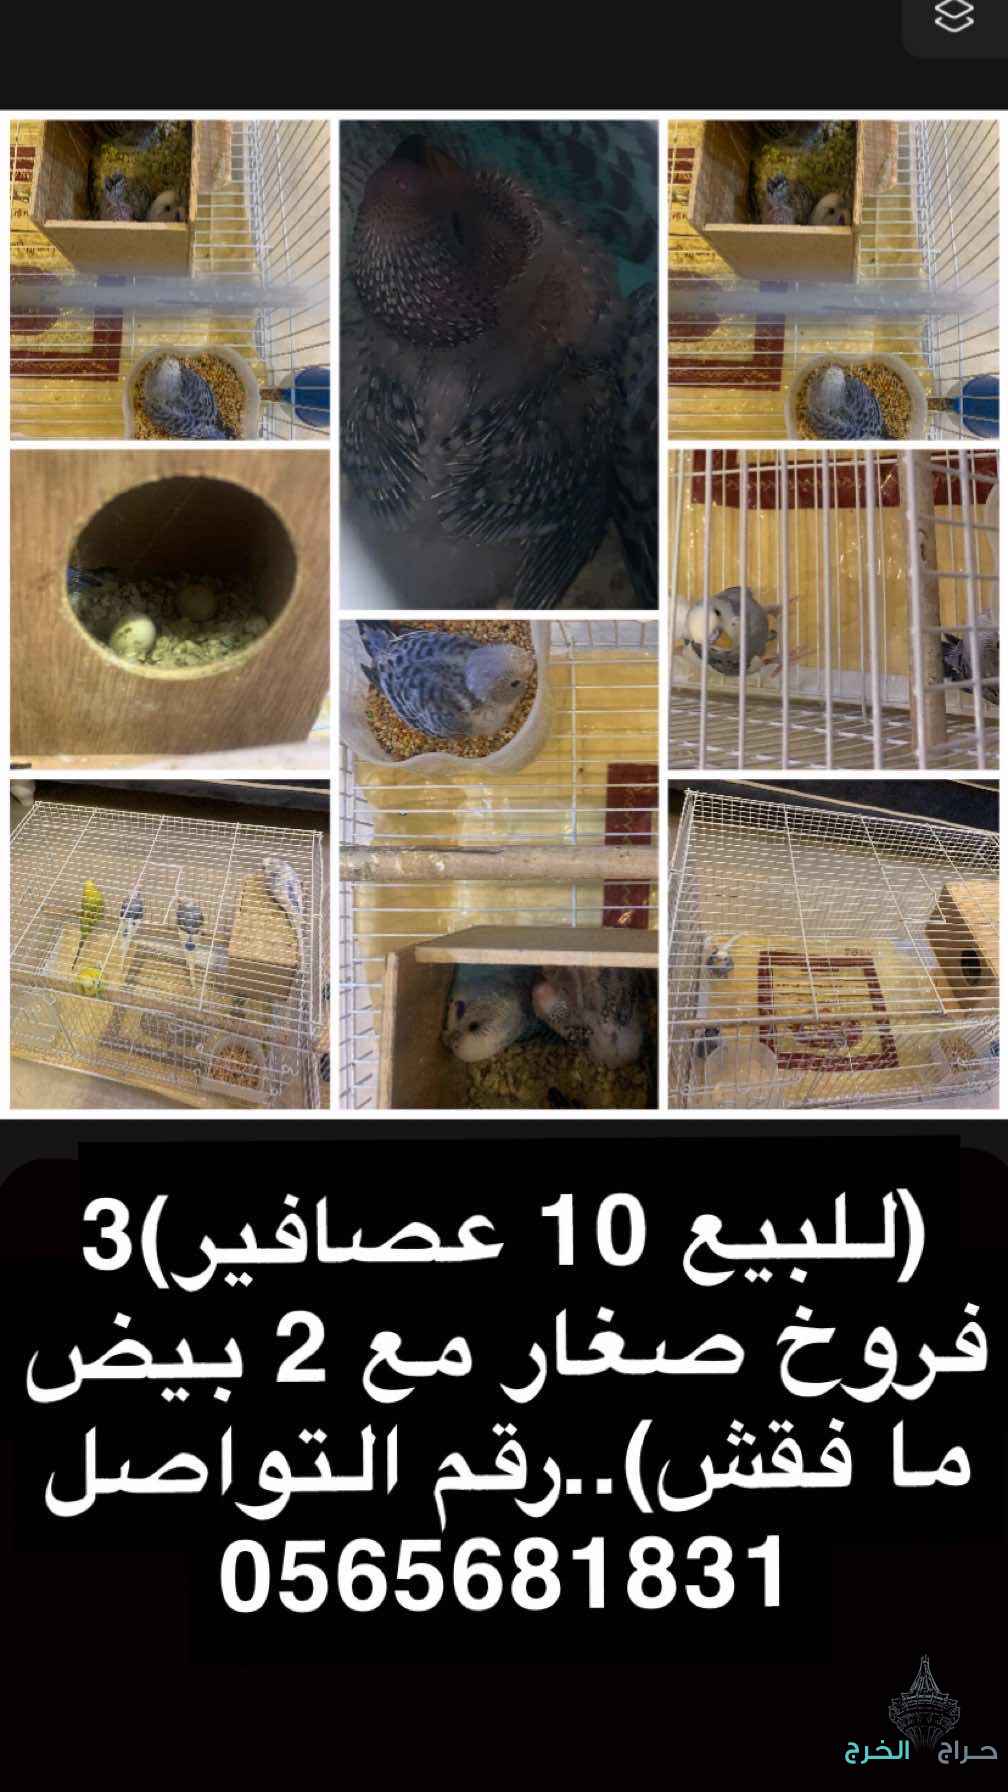 (10عصافير البادجي) للبيع الخرج الرياض الضبيعه الدلم الهياثم الحوطة 